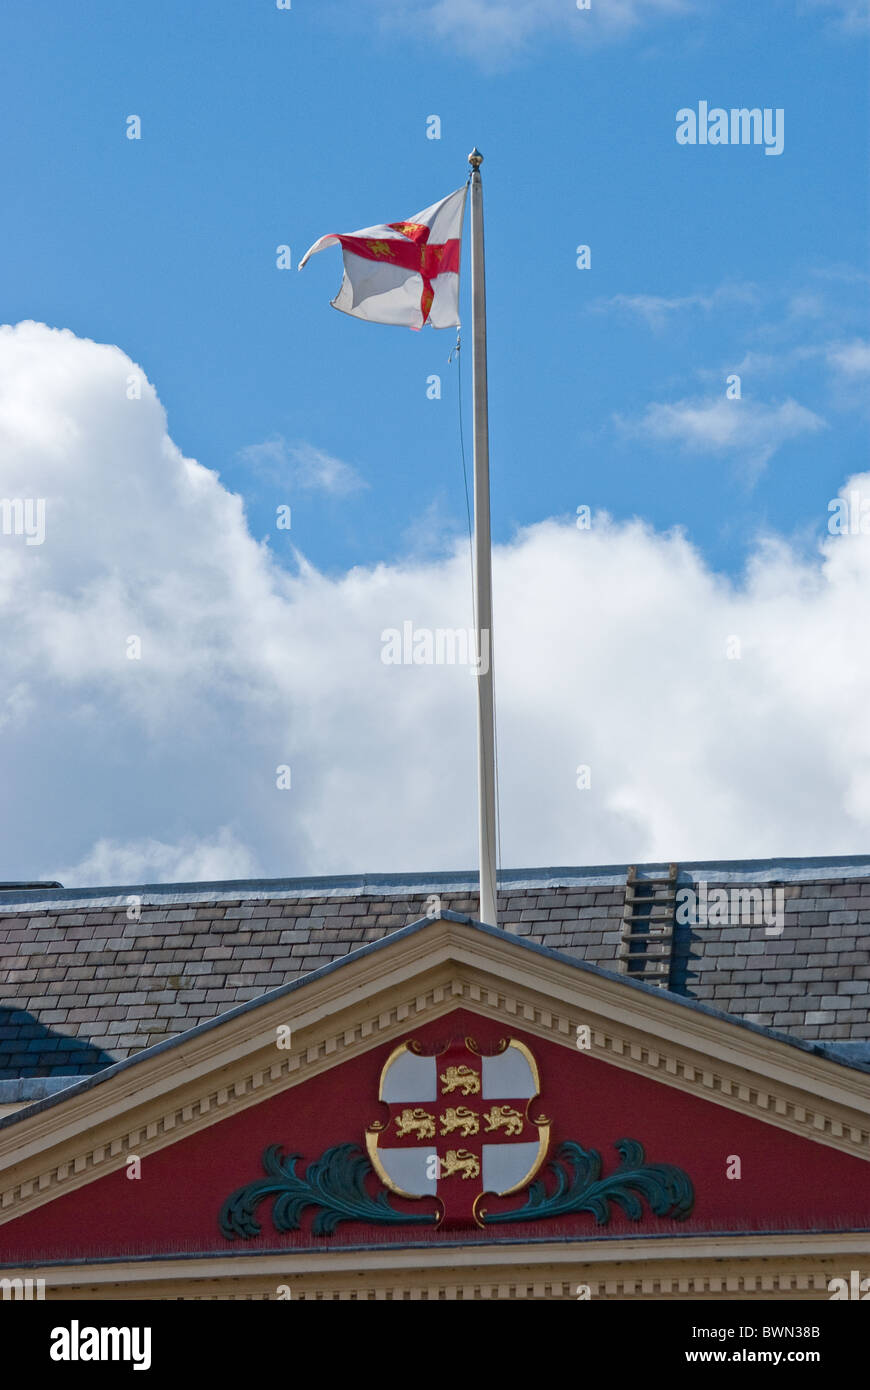 York armoiries et drapeau sur la Mansion House Banque D'Images